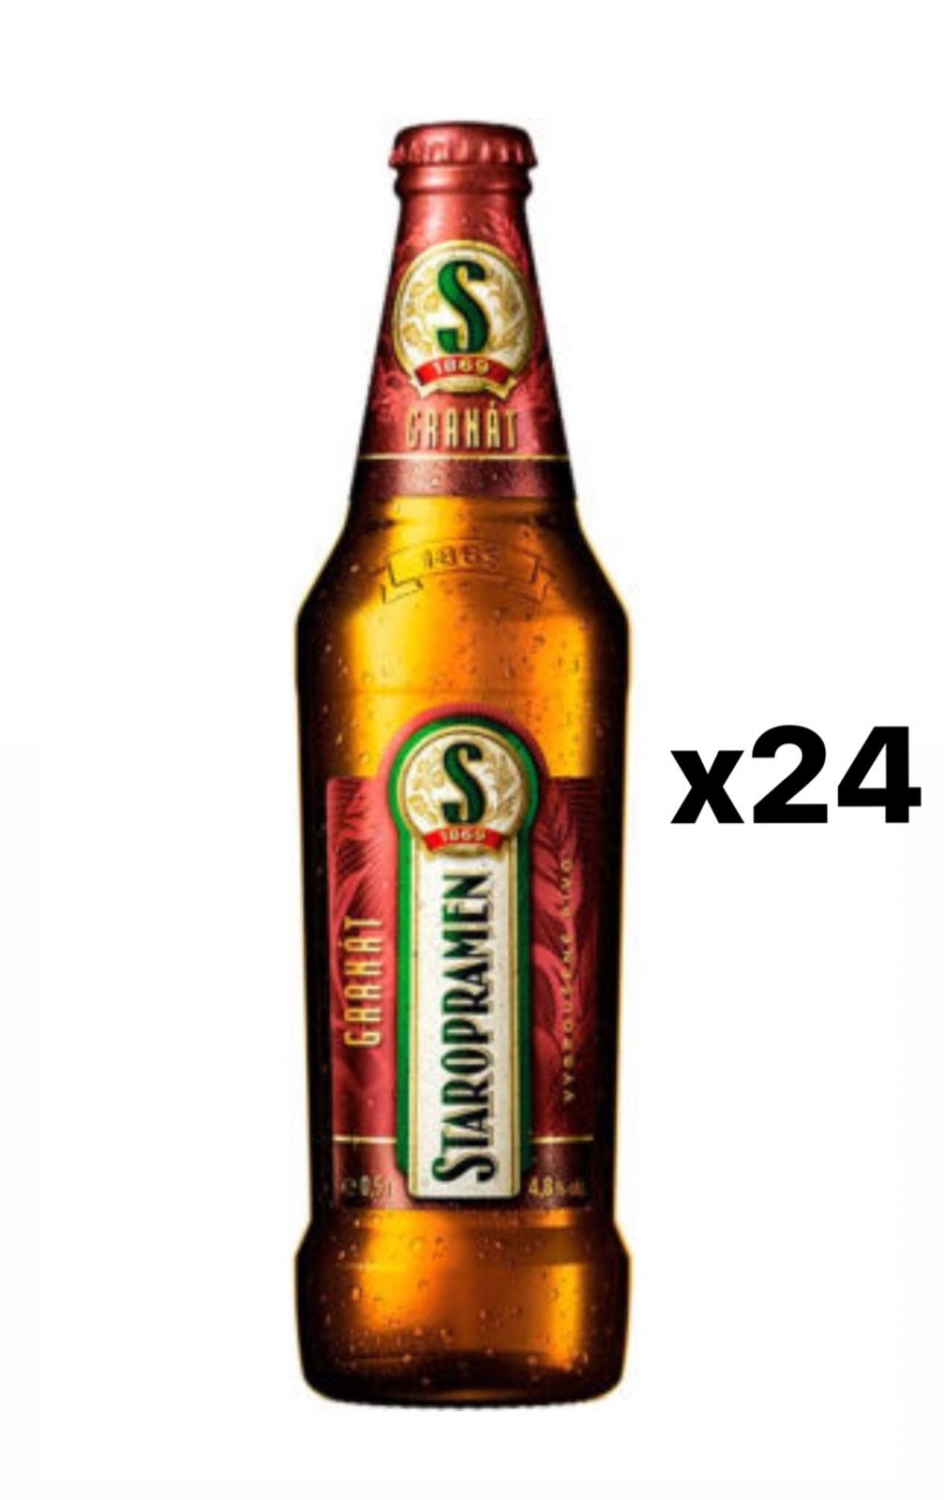 Staropramen Granat 4,8% 24x33cl bottle